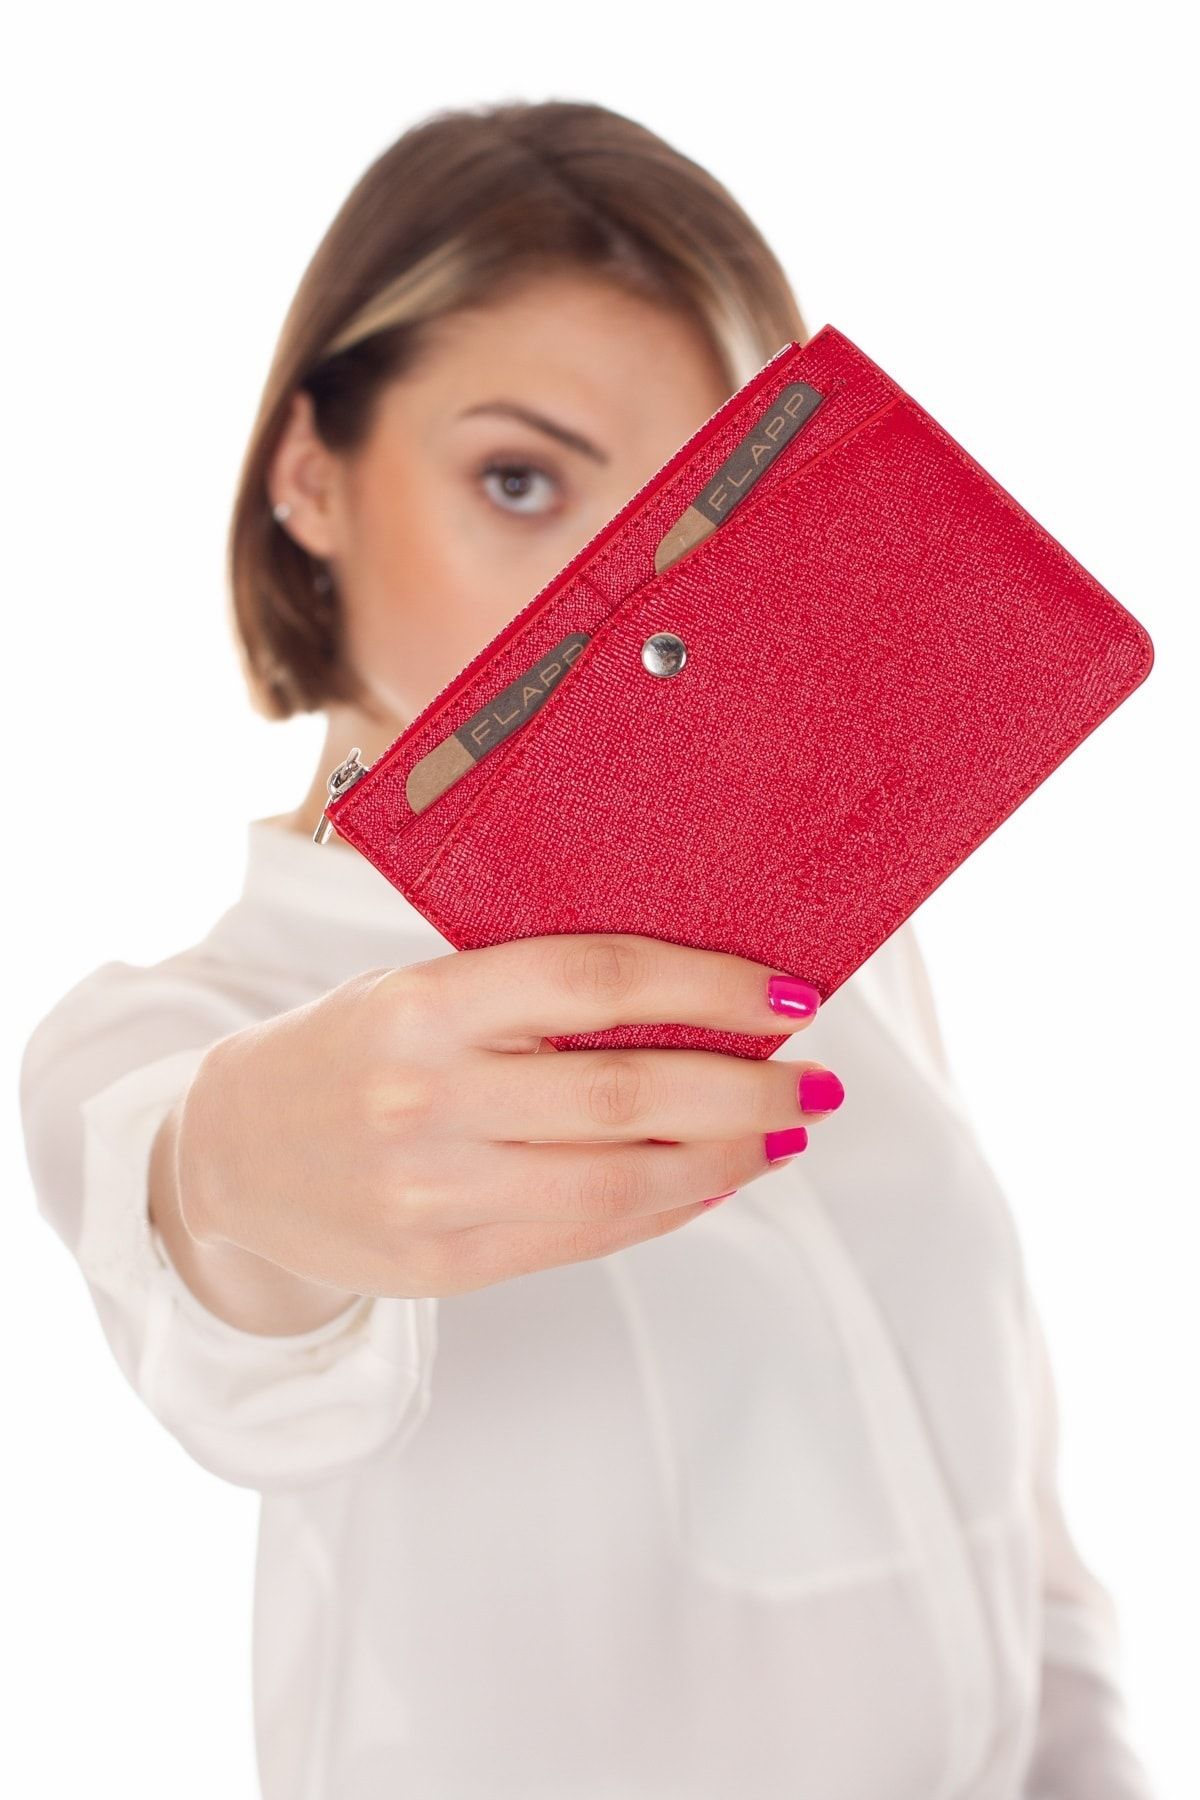 Flapp Deri Kırmızı Desenli Rfıd Korumalı Engelleyici Fermuarlı Bozukpara Gözlü Çanta Cüzdan